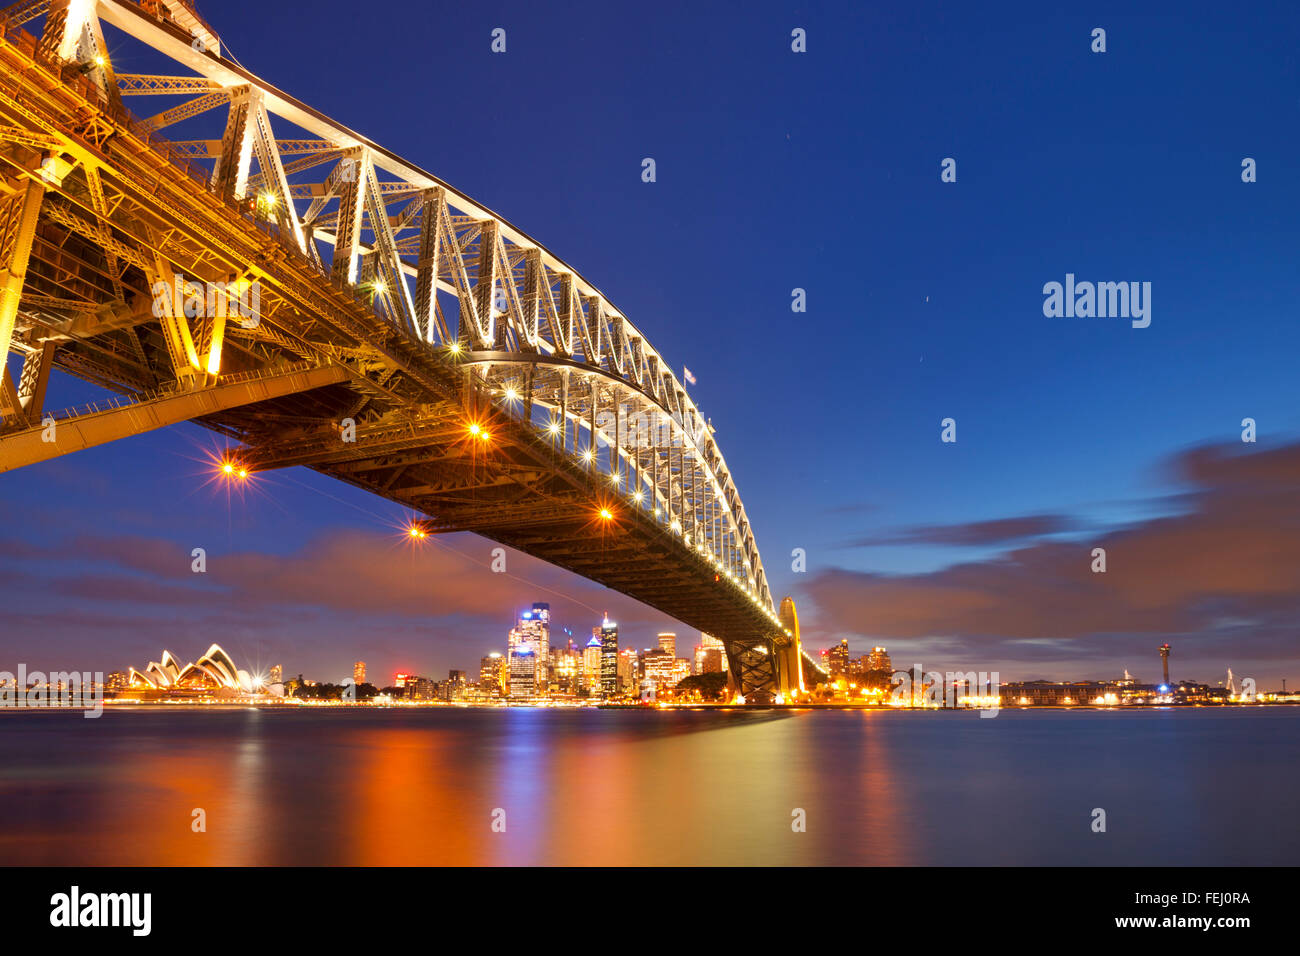 Le Harbour Bridge, l'Opéra de Sydney et le quartier central des affaires de Sydney. Photographié dans la nuit. Banque D'Images